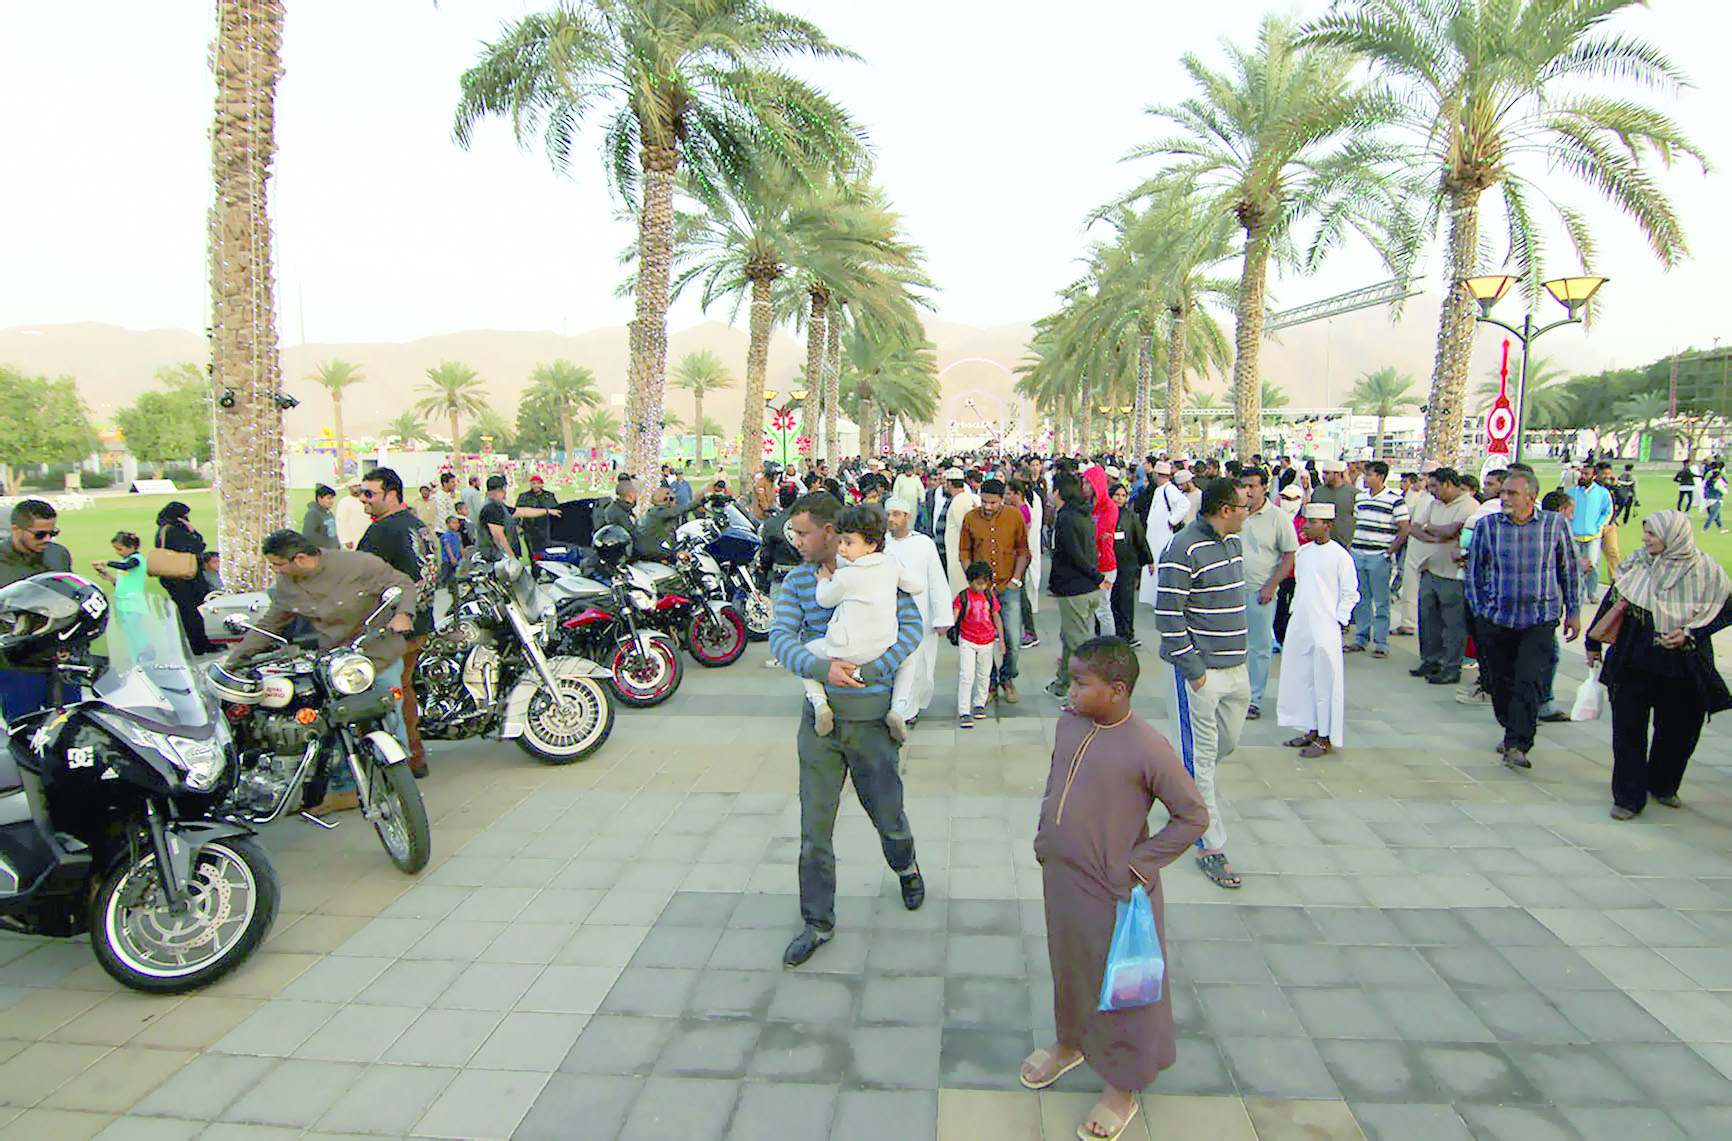 ضمن فعاليات مهرجان مسقط.. 

مسيرة للدراجات النارية بمبادرة من عدد من الهواة